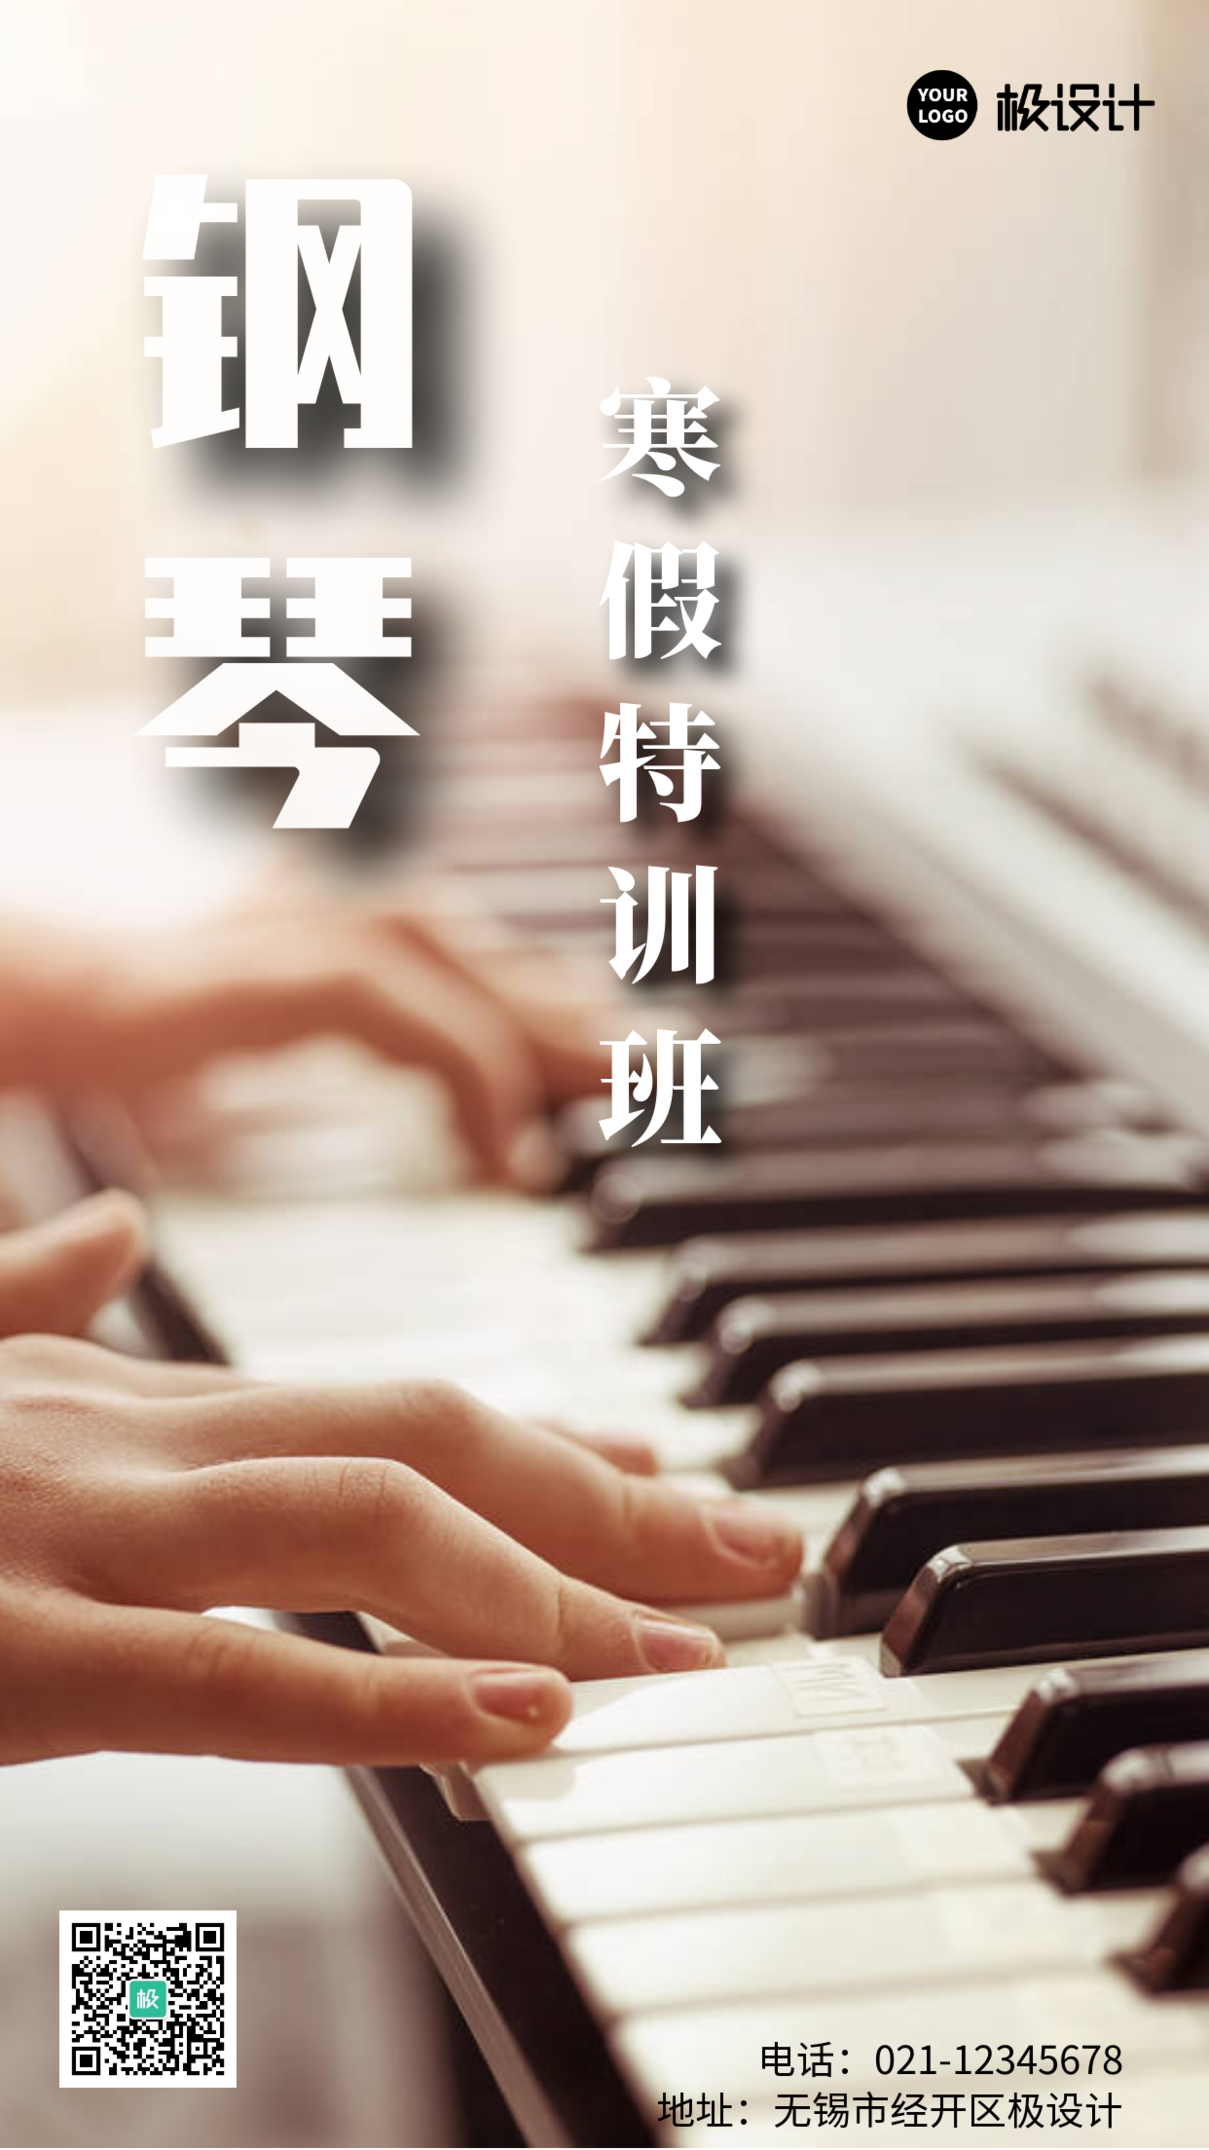 小学生寒假特训班钢琴简约大气宣传手机海报